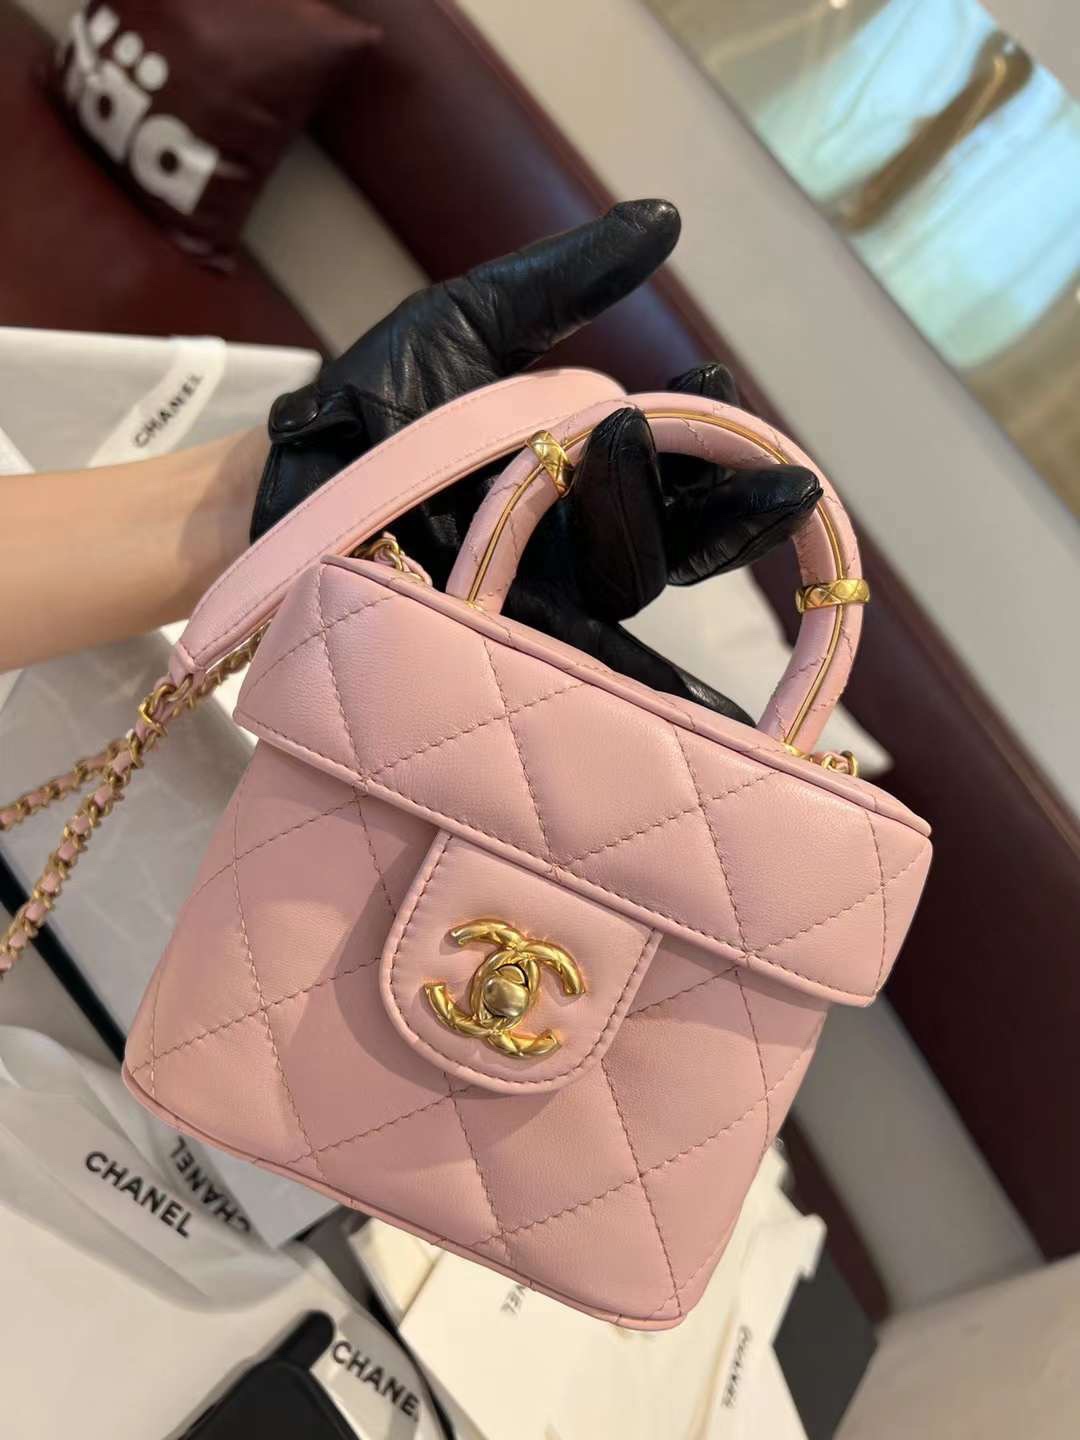 【P2370】Chanel女包货源 香奈儿23年春夏新款手柄口盖包盒子化妆包 粉色